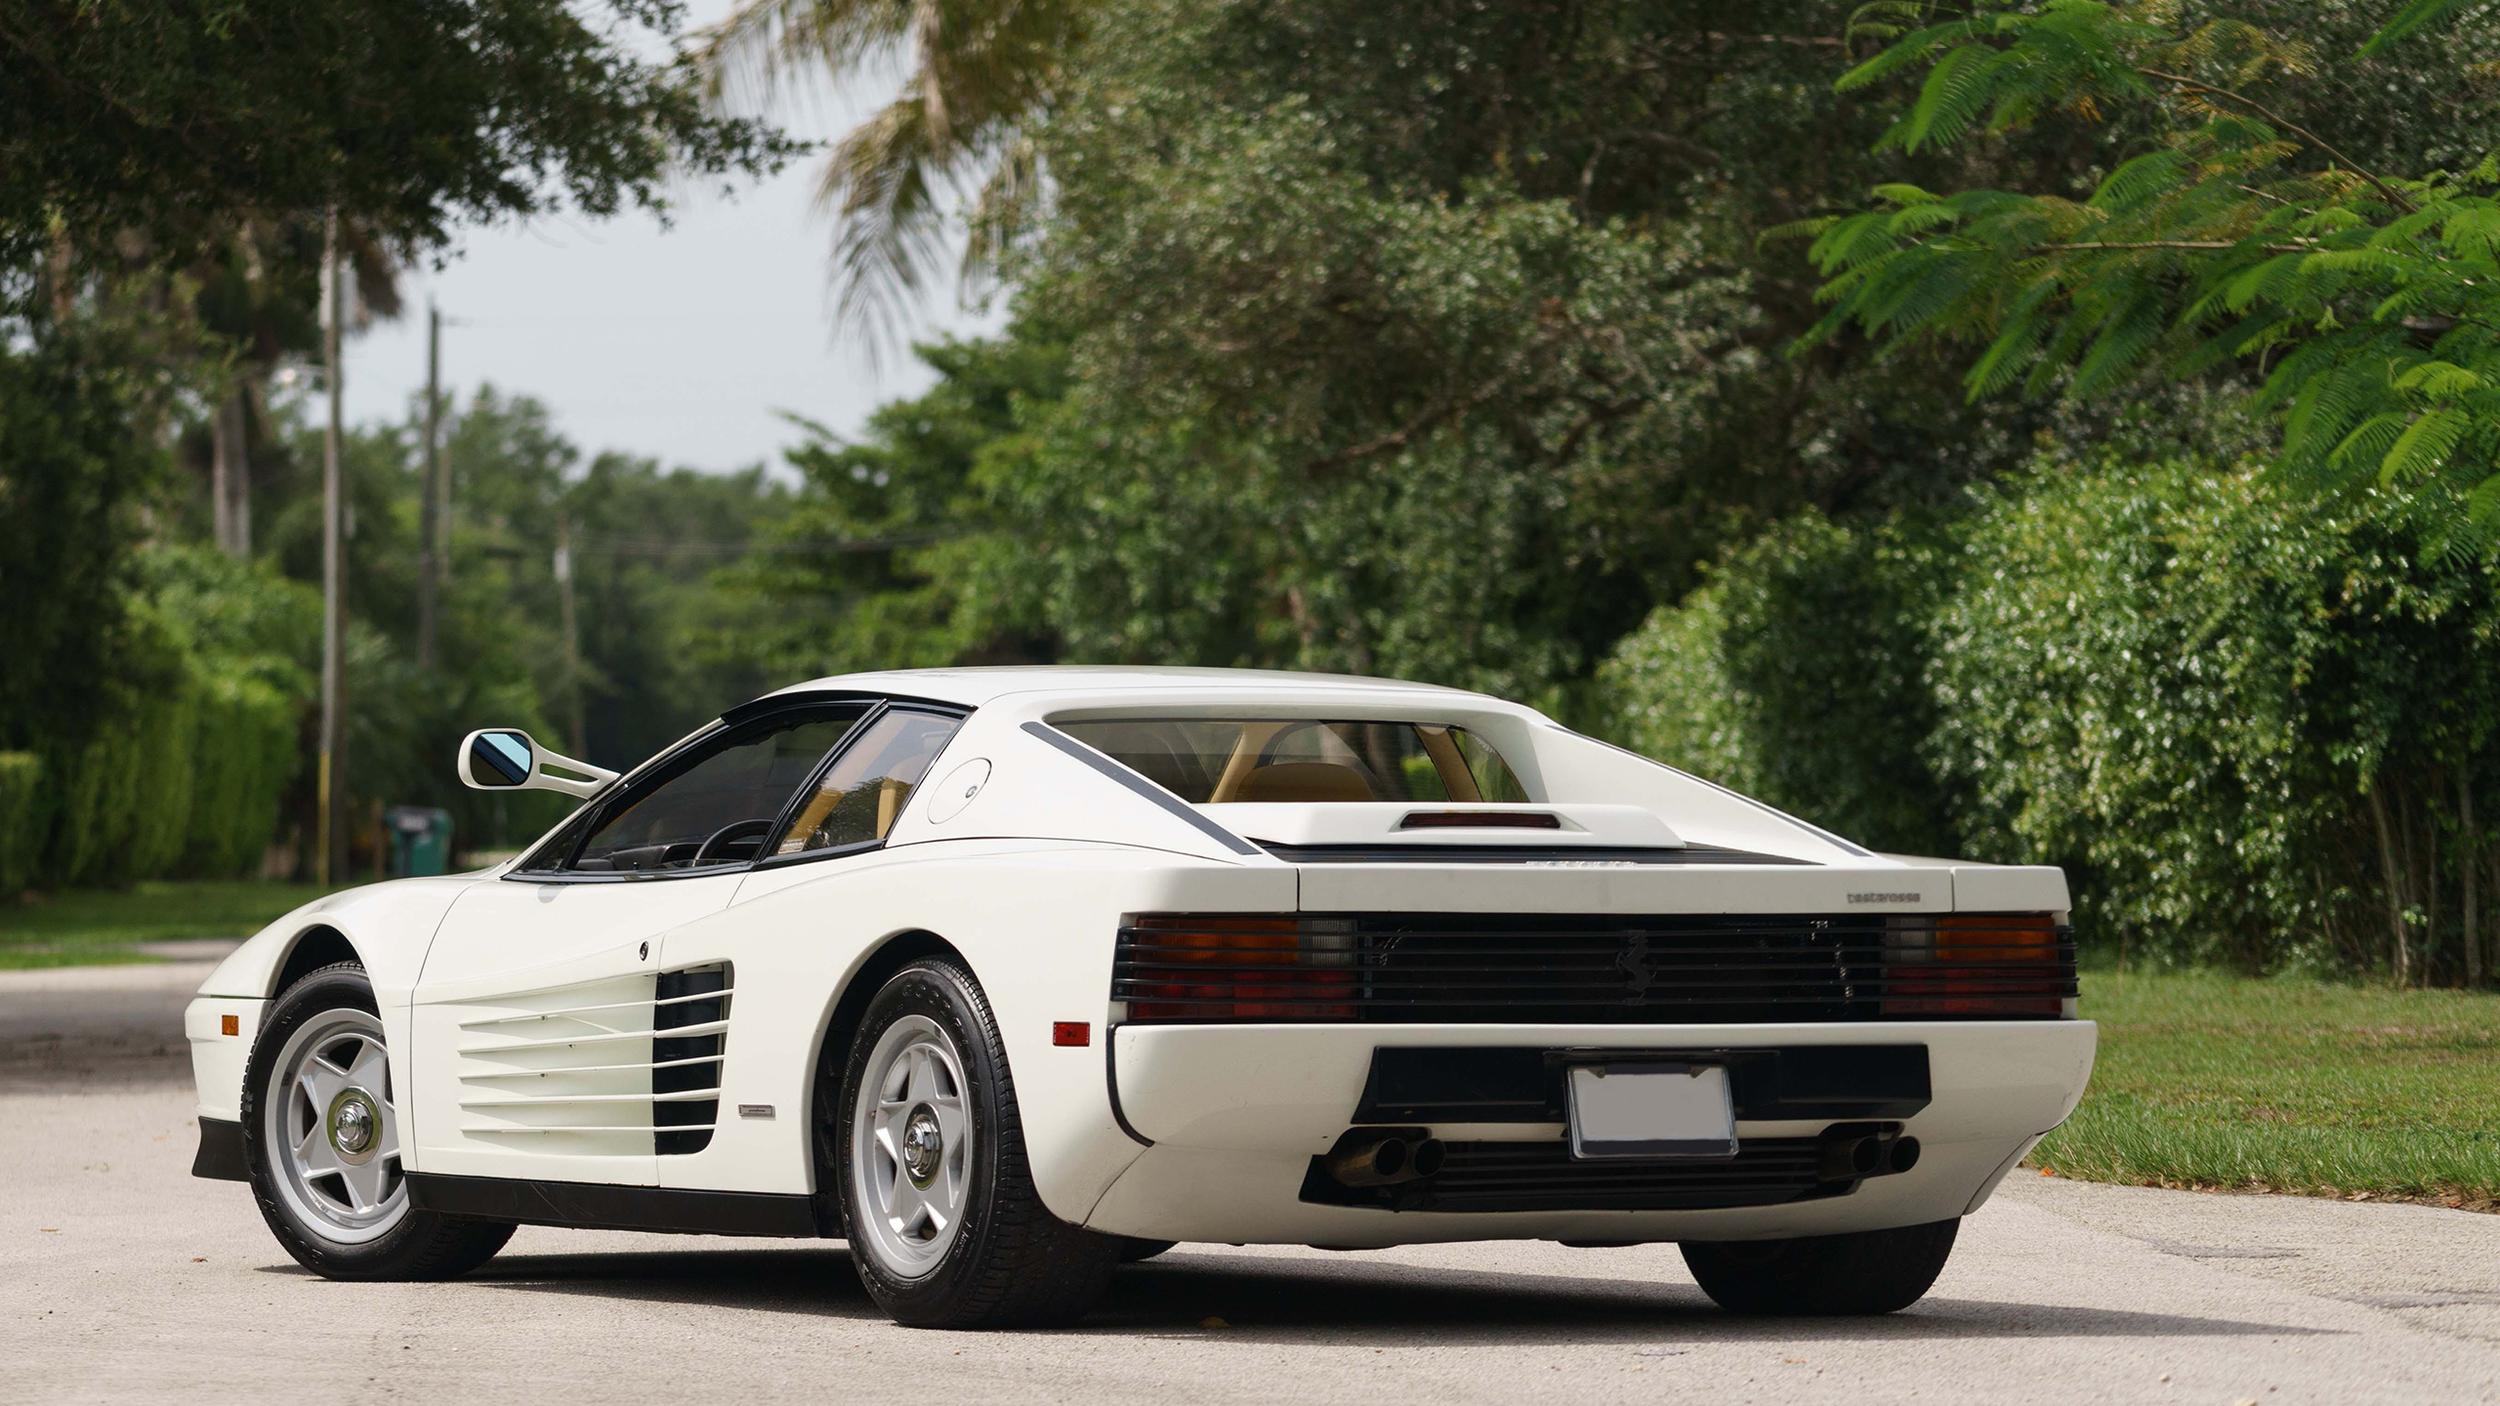 Miami Vice Ferrari Testarossa up for auction